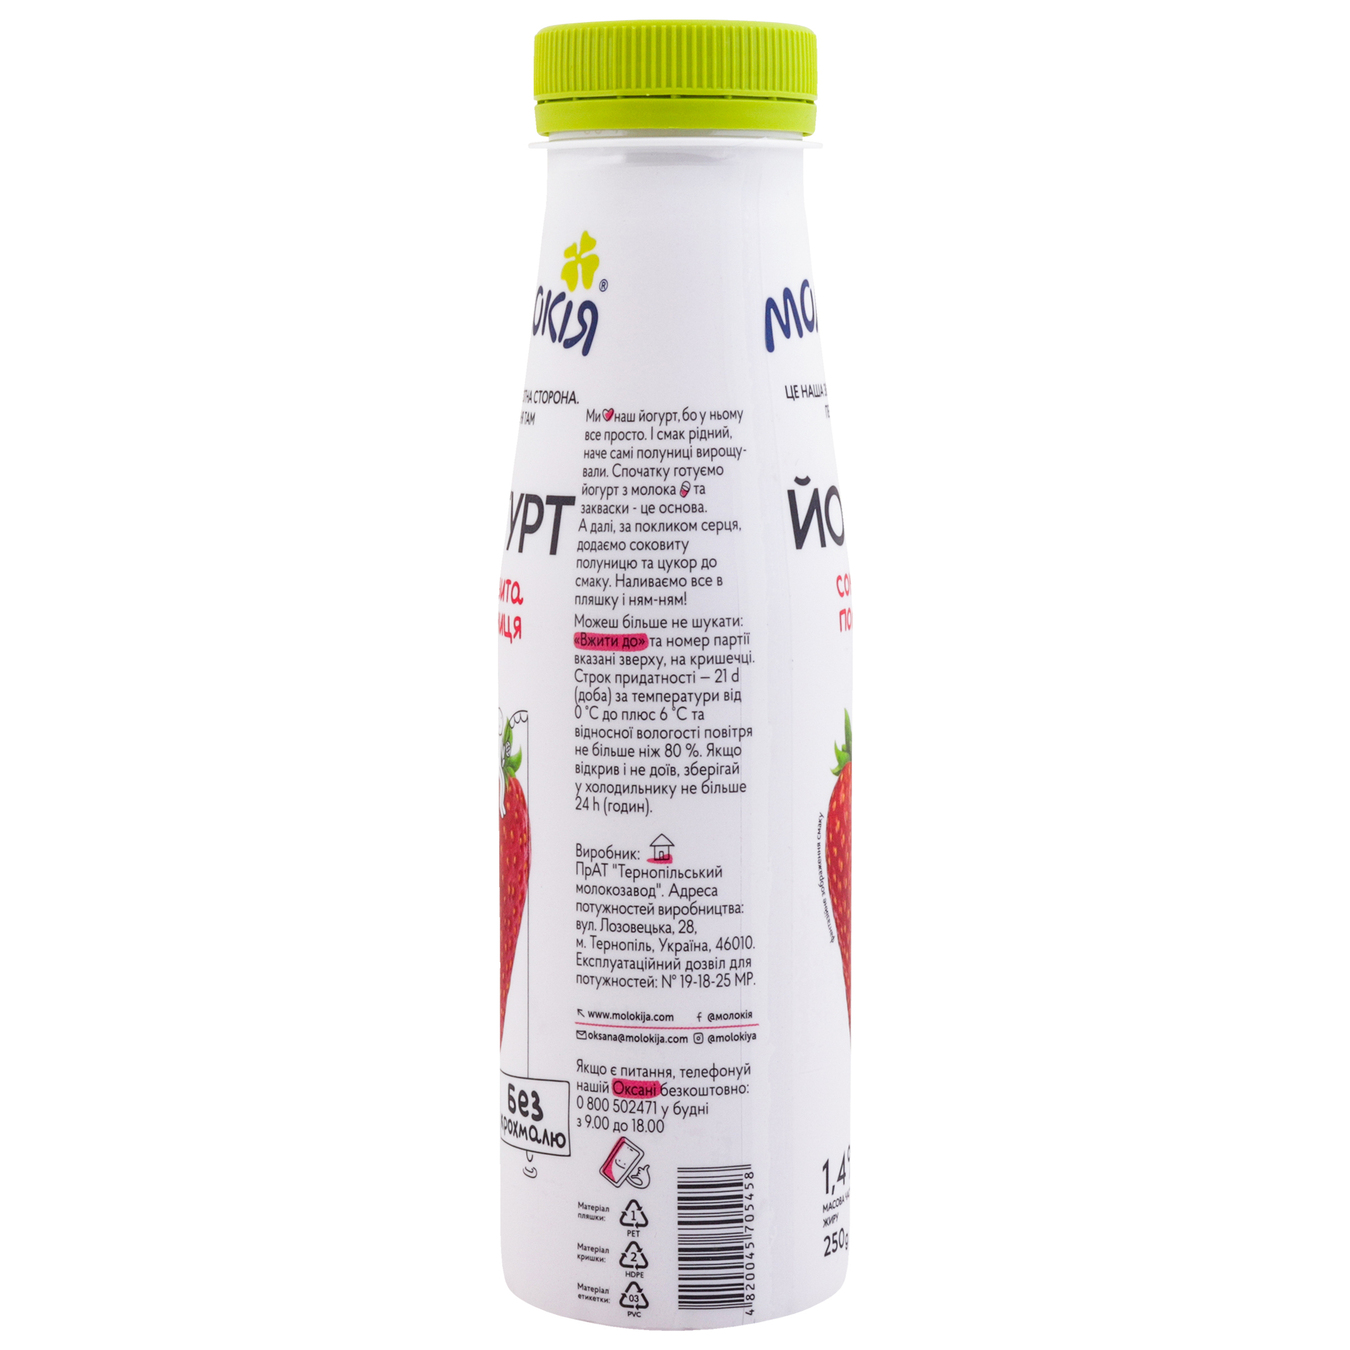 Йогурт Молокия Сочная клубника 1.4% 250г 3